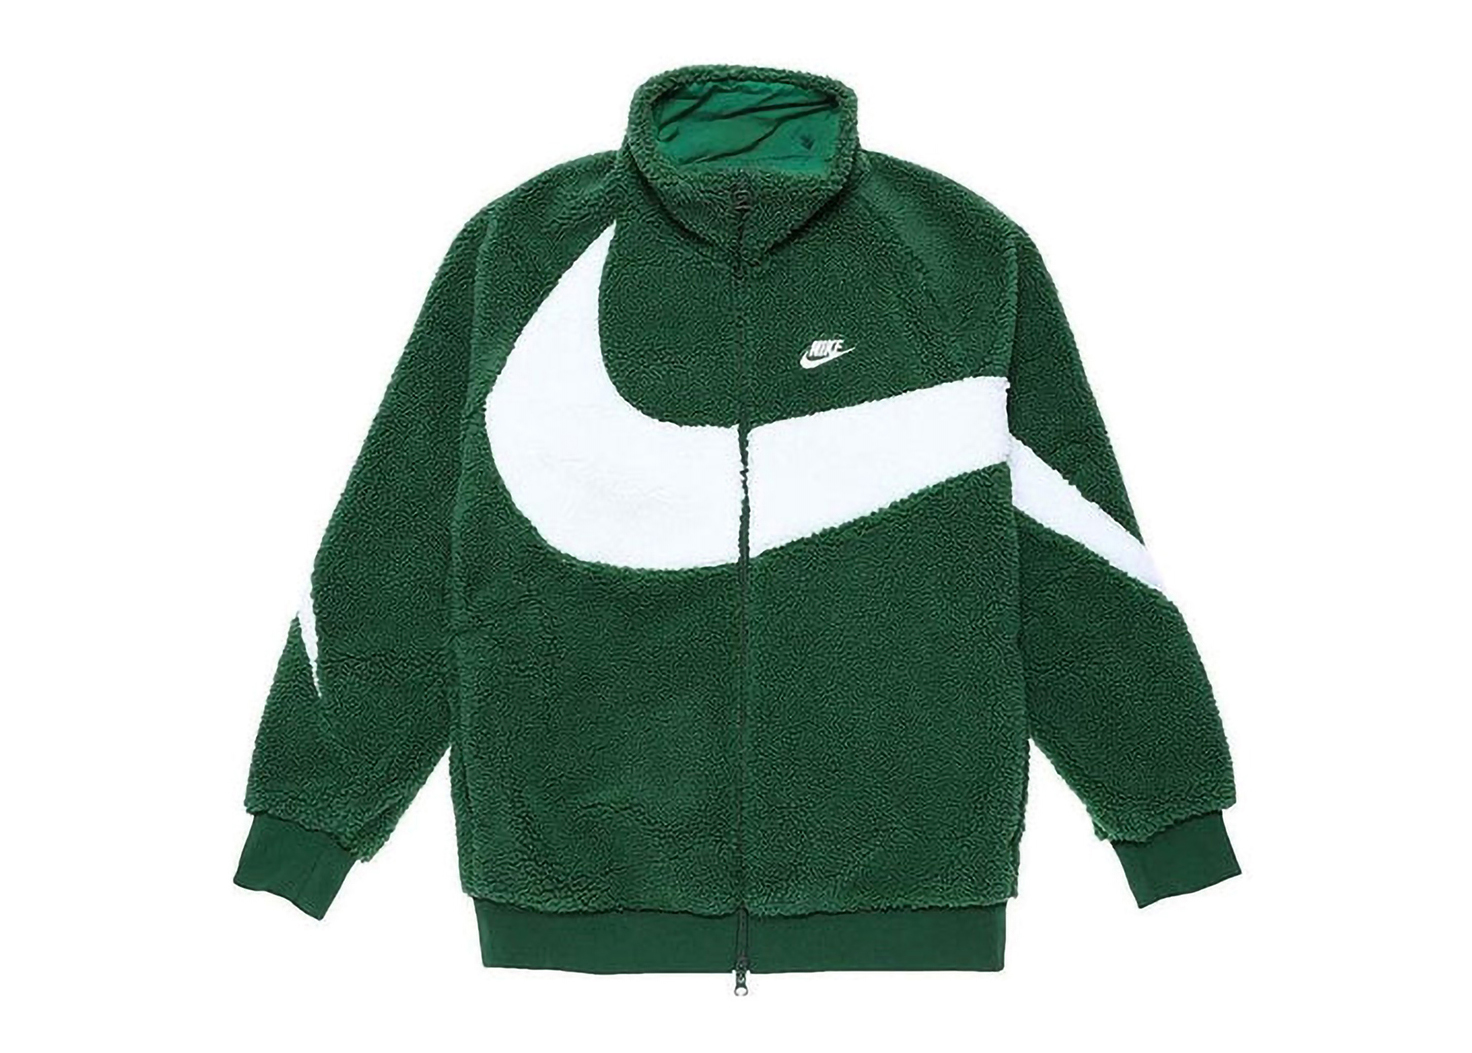 Nike Big Swoosh Reversible Boa Jacket (Asia Sizing) Gorge Green 